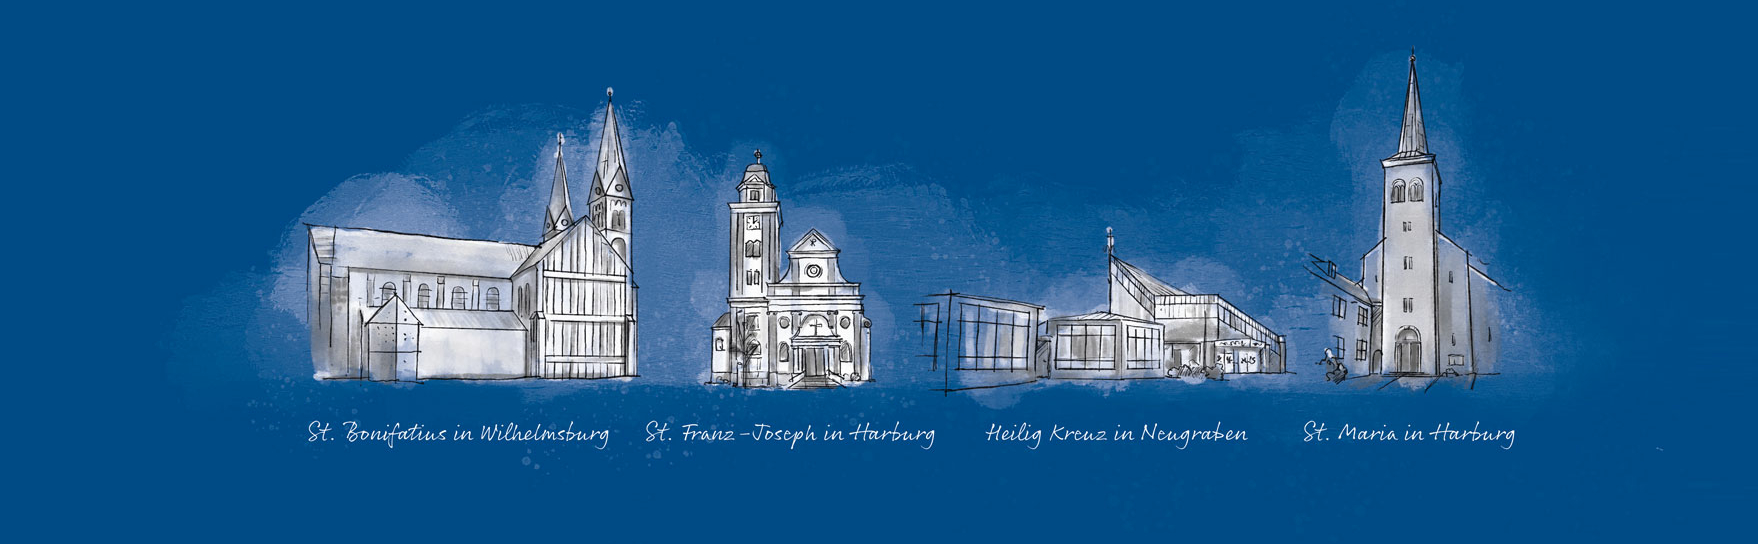 Ilustration aller der Pfarrei St. Maximilian Kolbe zugehörigen Kirchen auf blauemHintergrund.